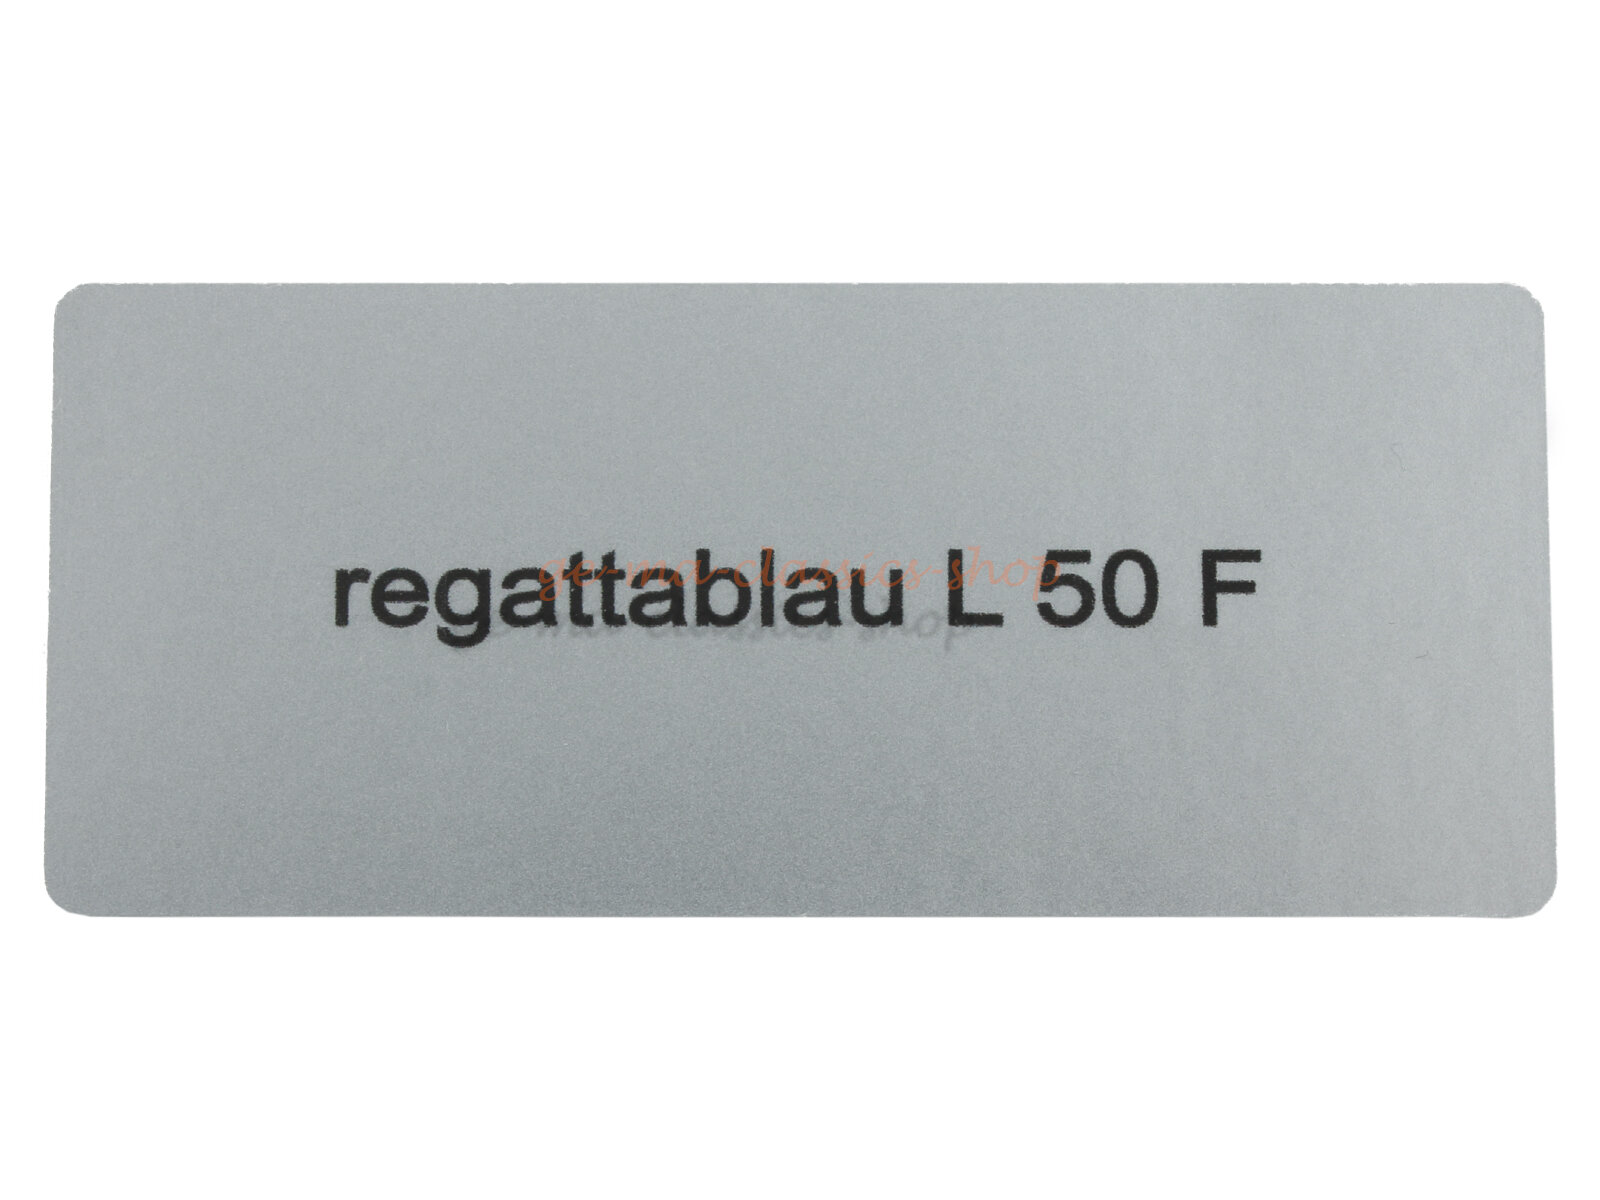 Aufkleber "regattablau L 50 F" Farbcode Sticker